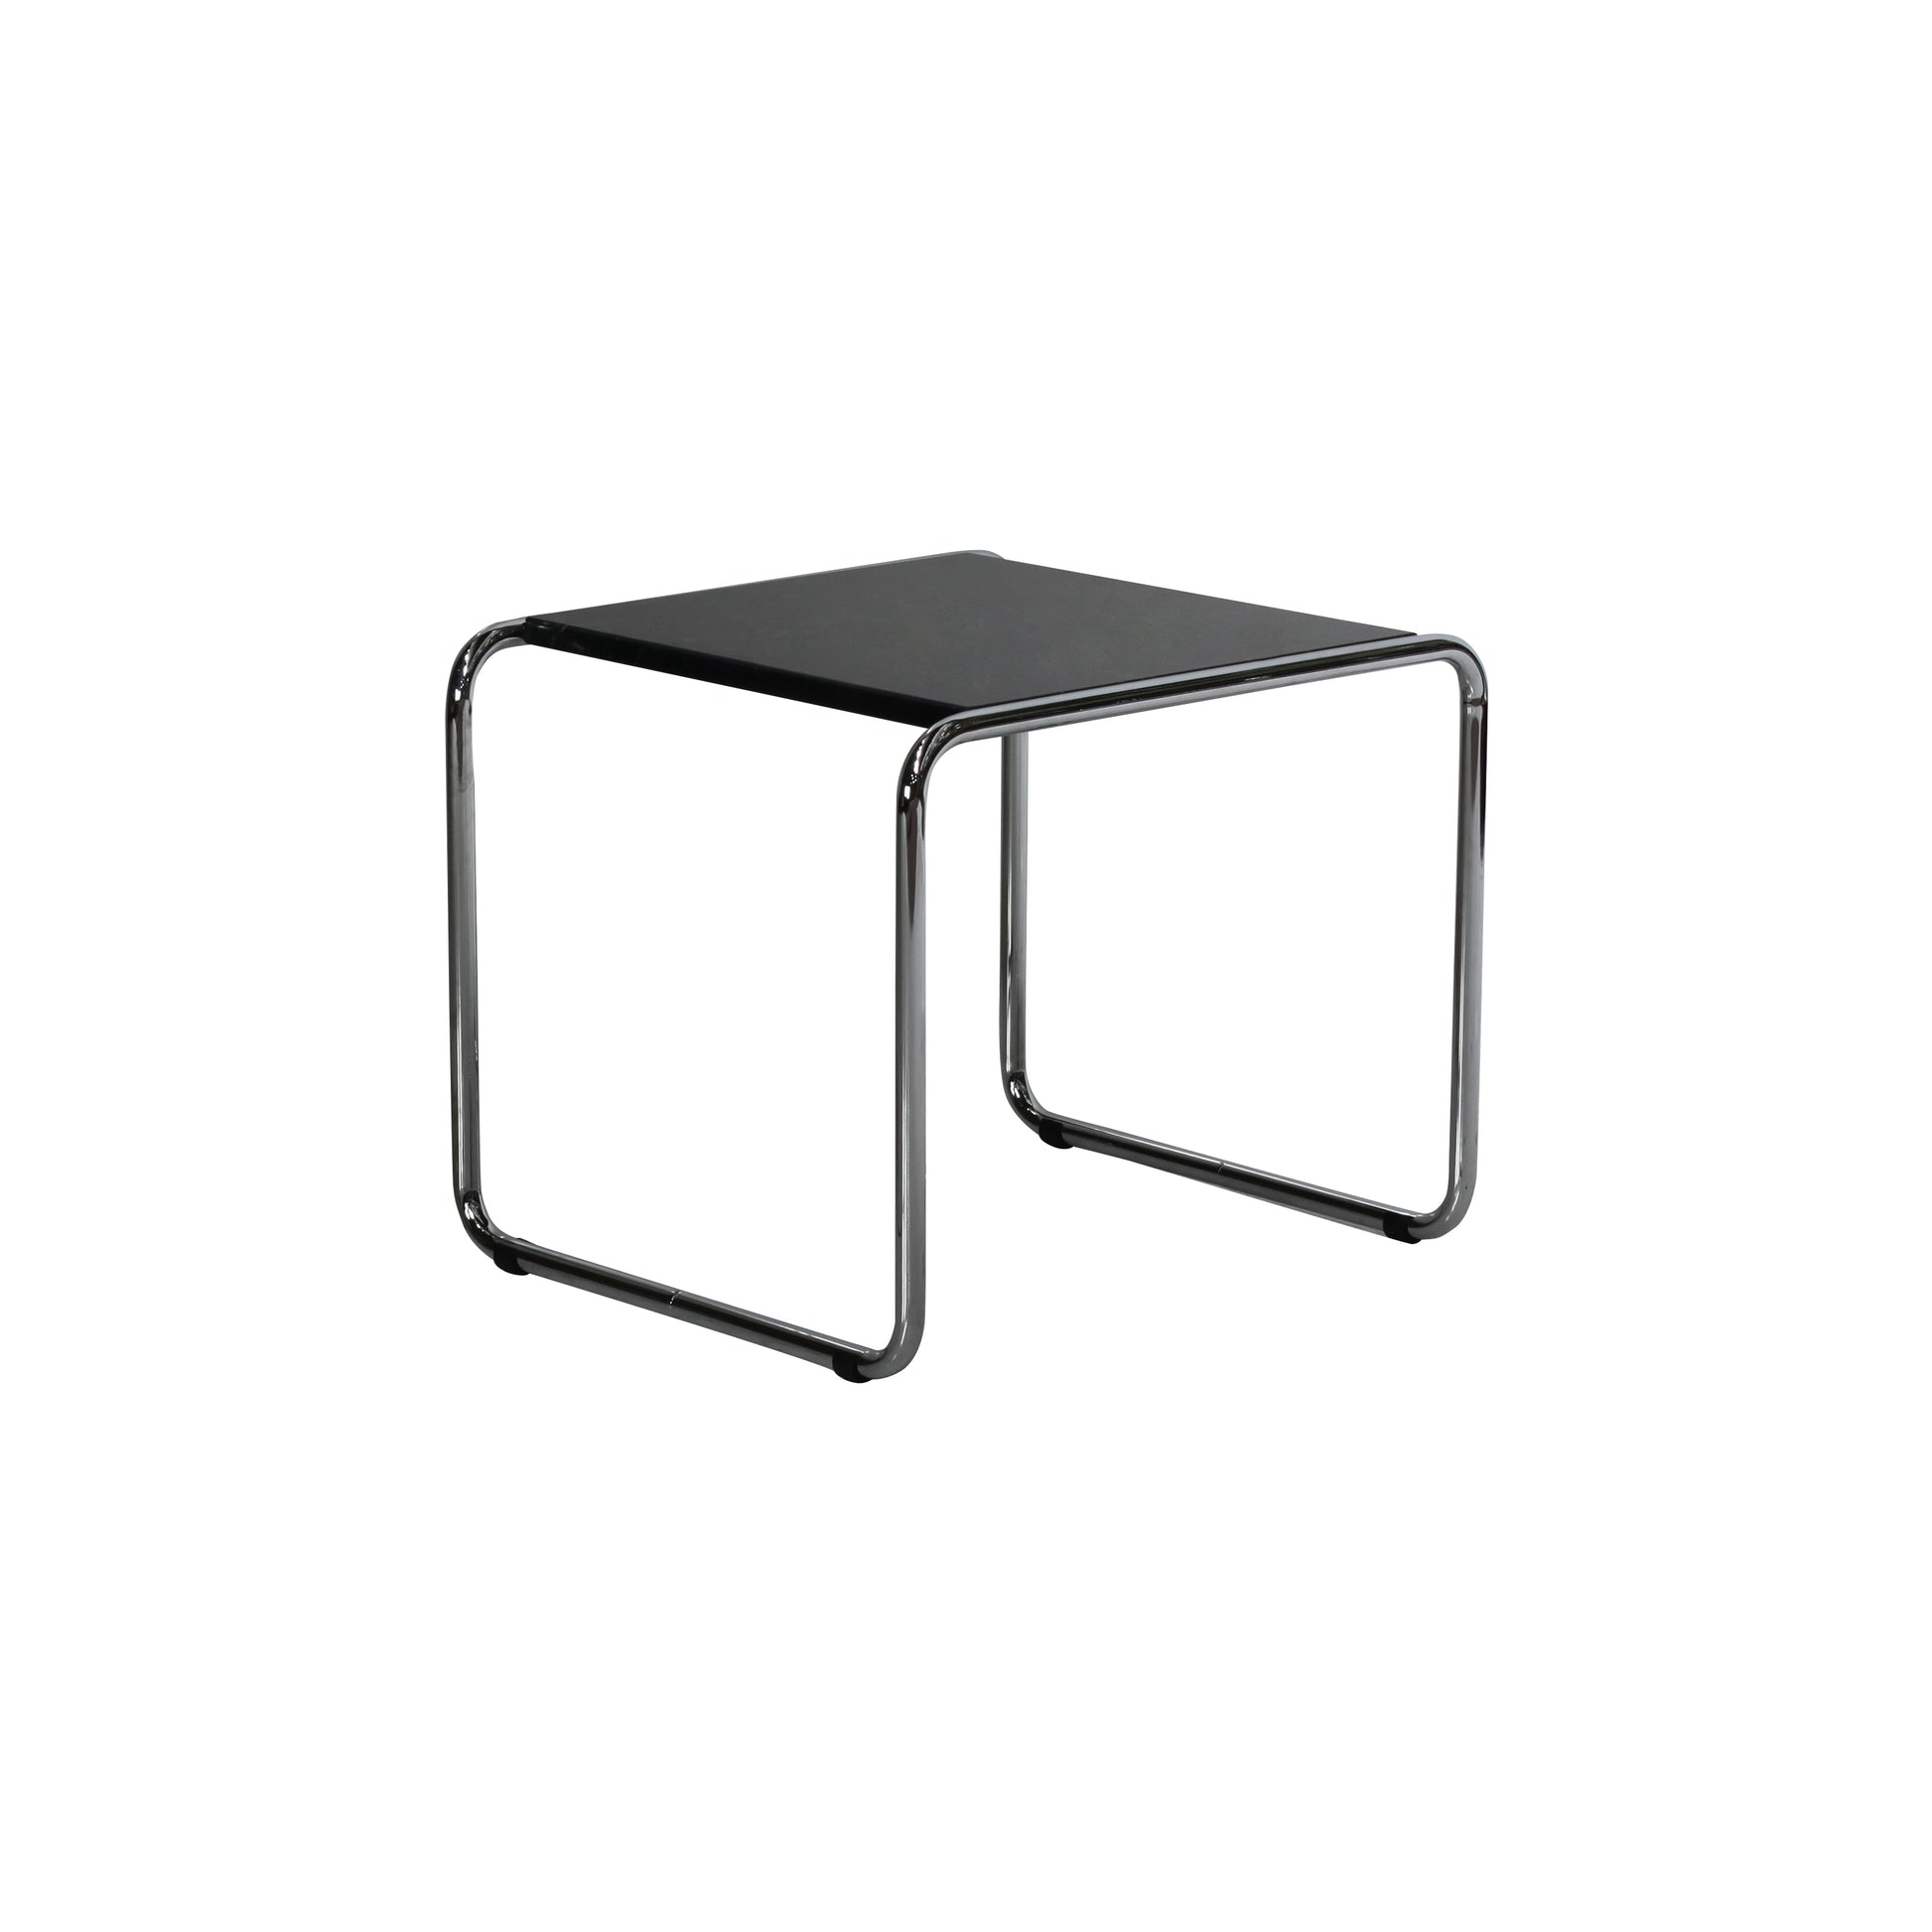 Laccio table style | Black | SIde